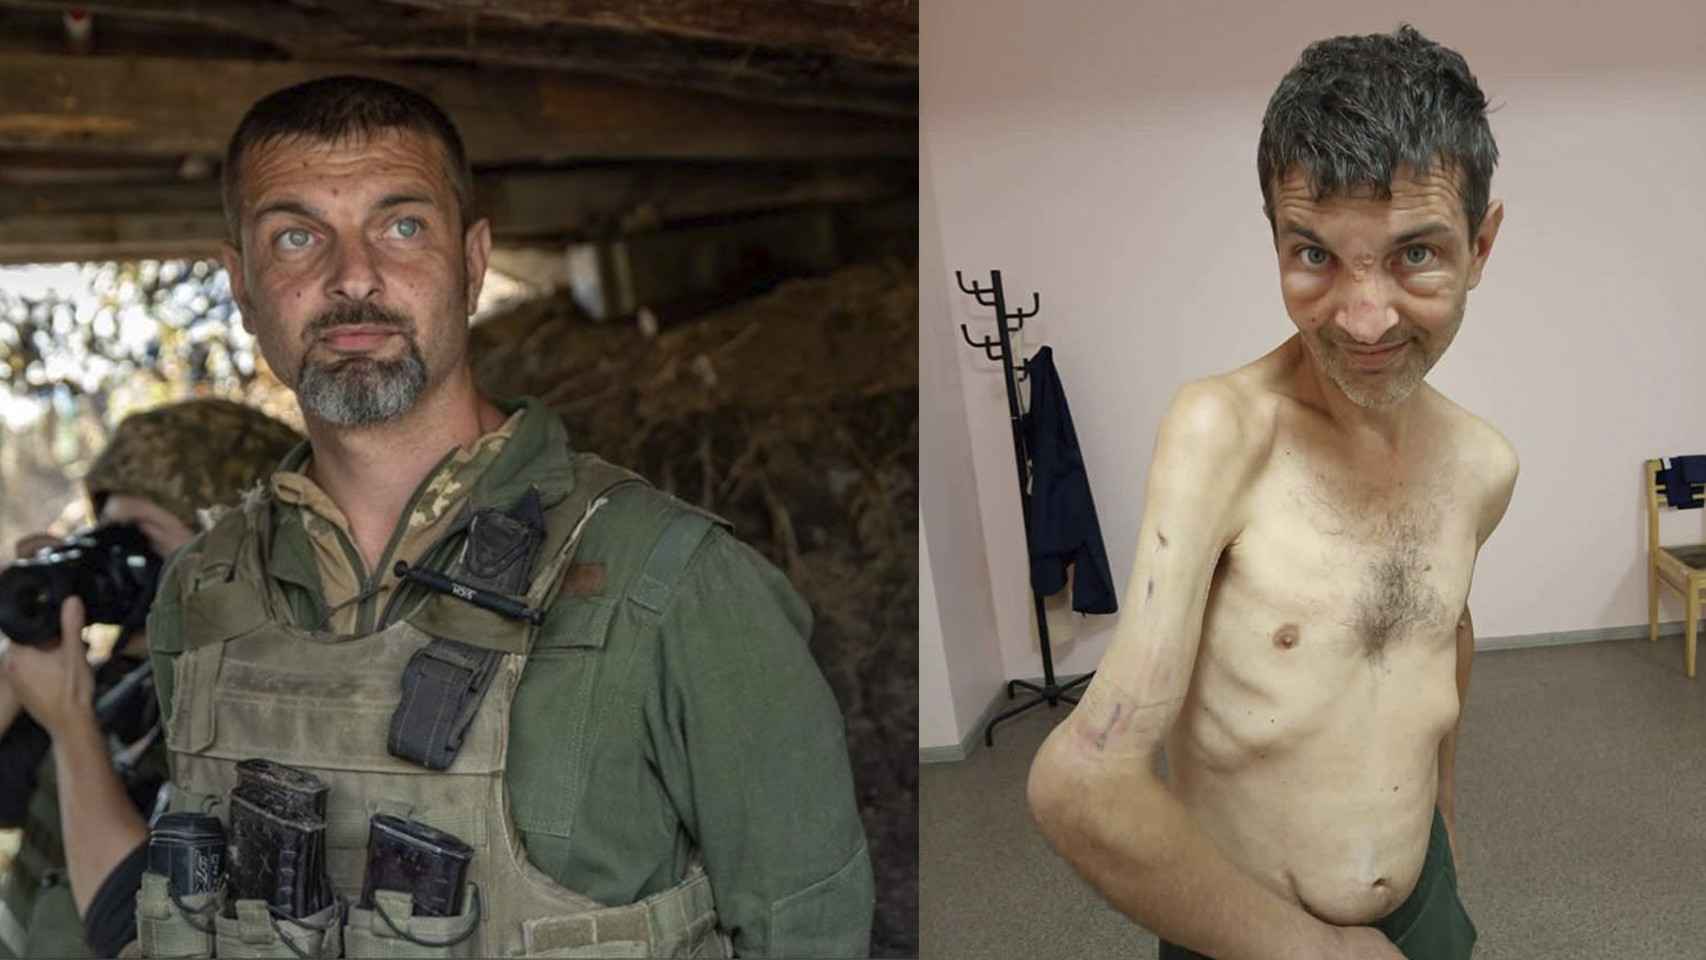 Mijailo Dianov, antes y después de su cautiverio.